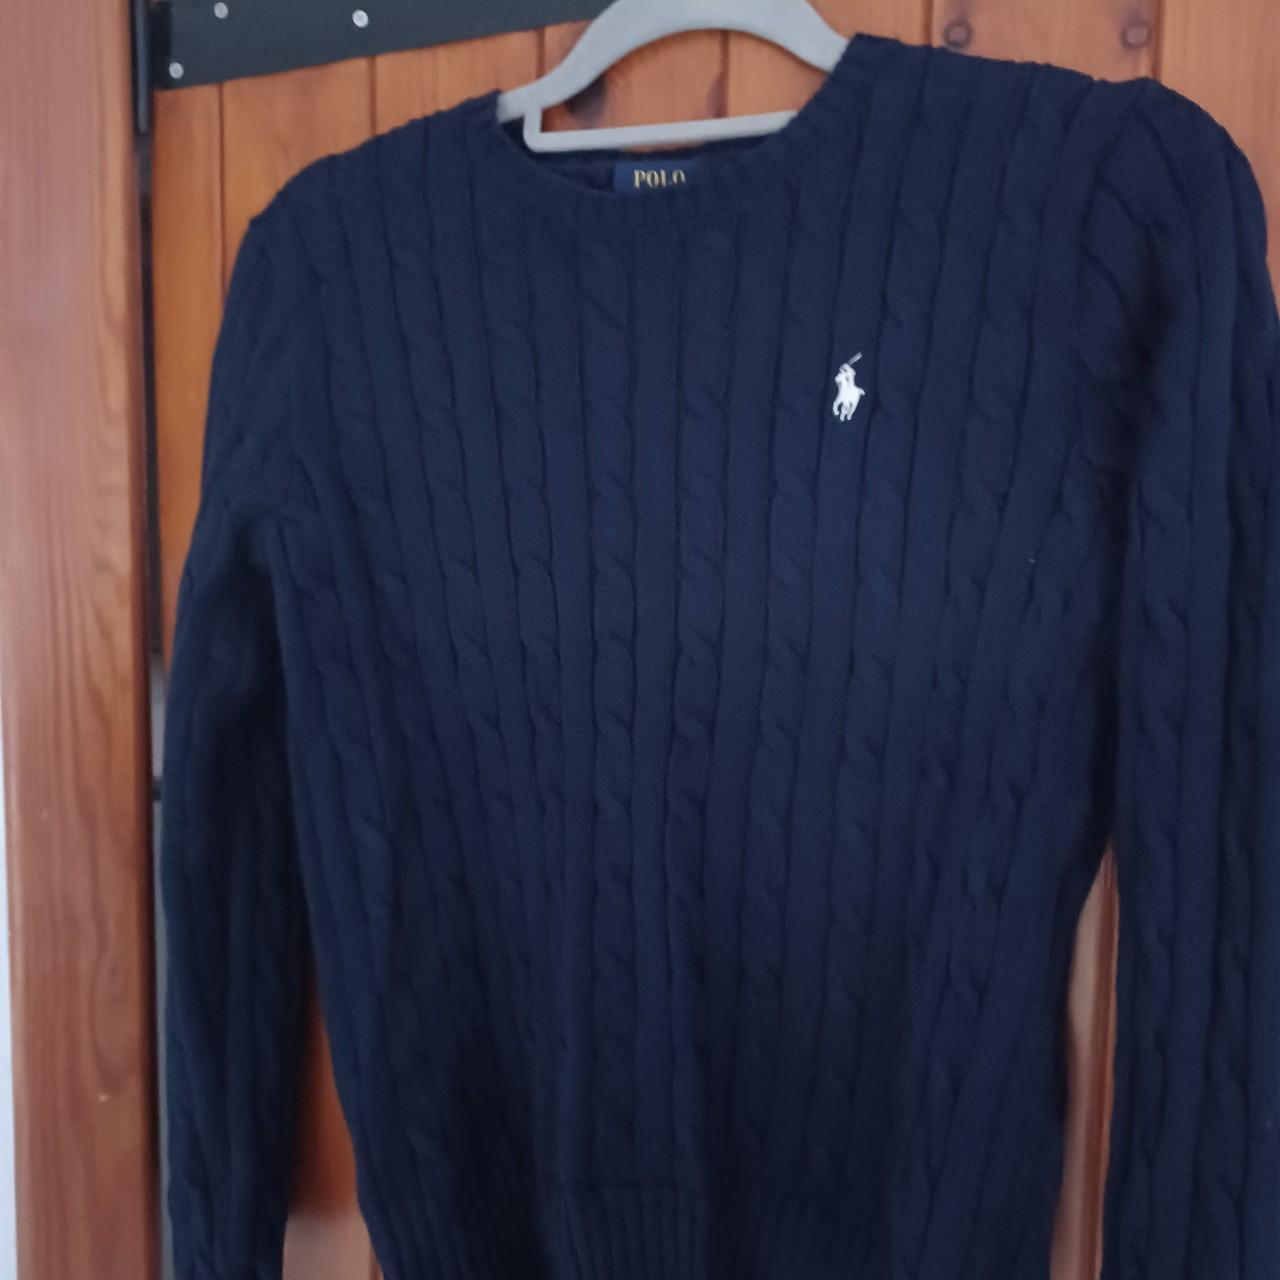 Ralph lauren sweater - Depop